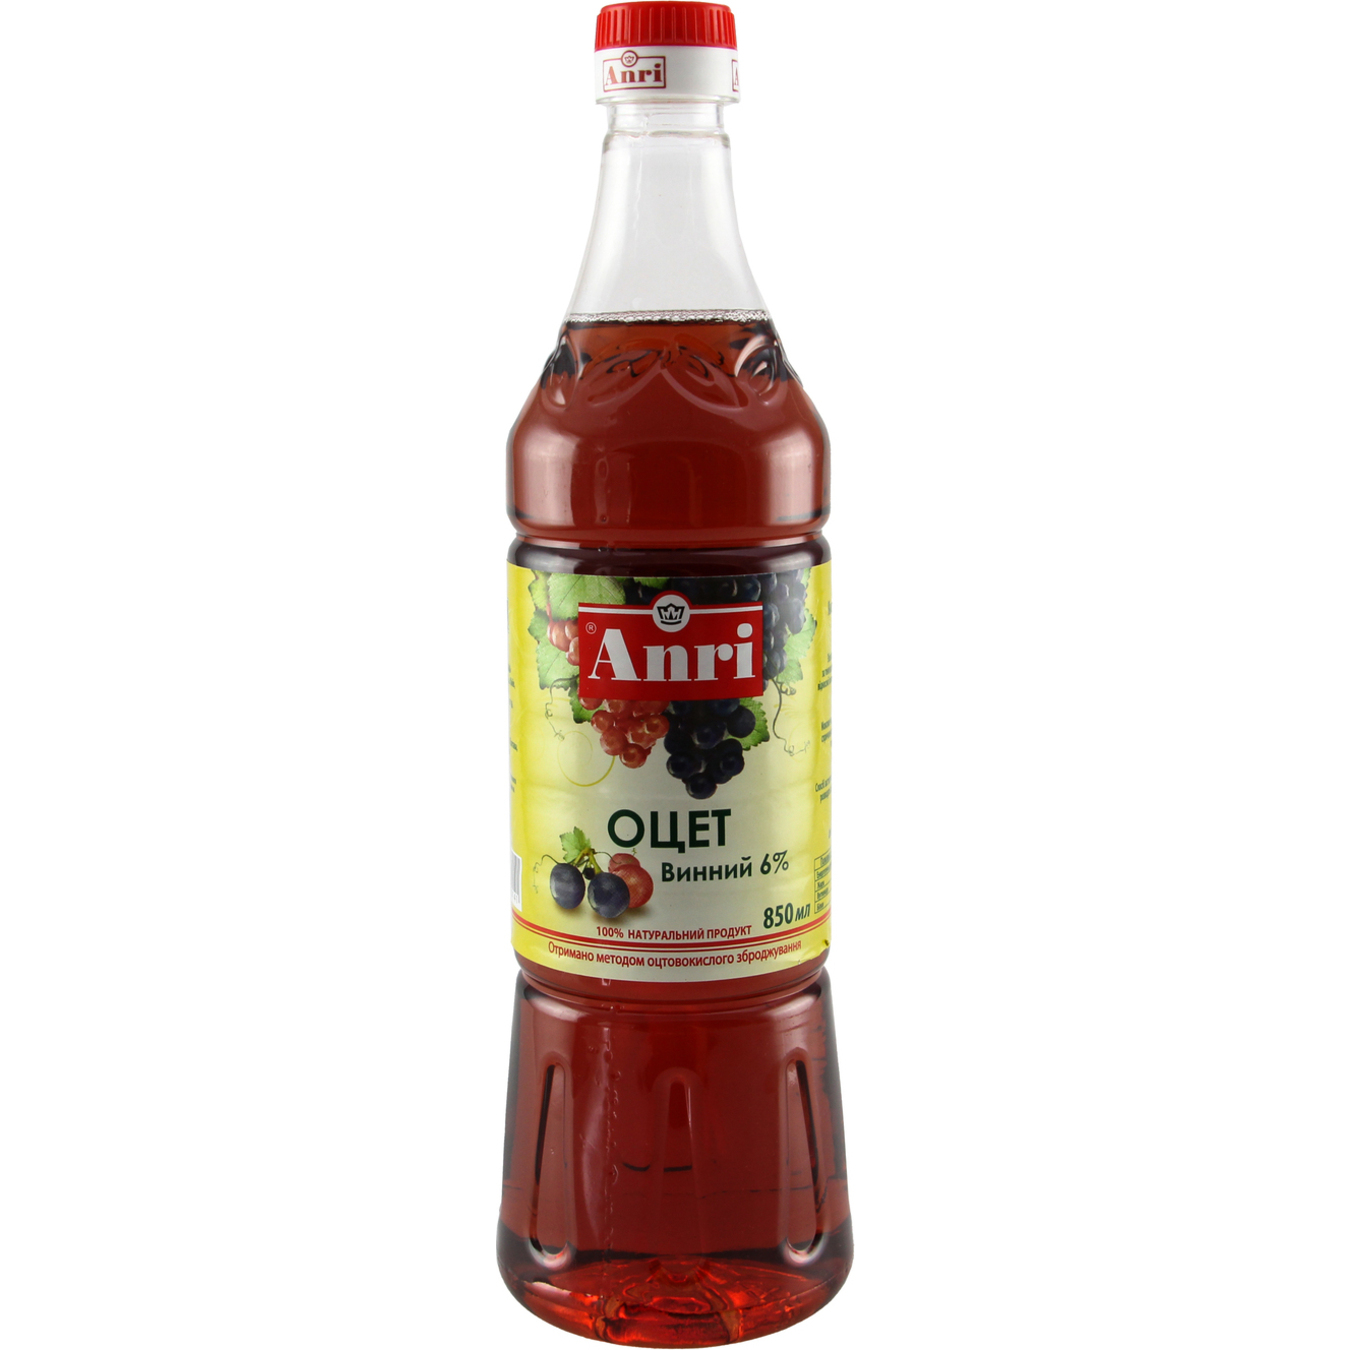 ANRIWine Vinegar 6% 850ml